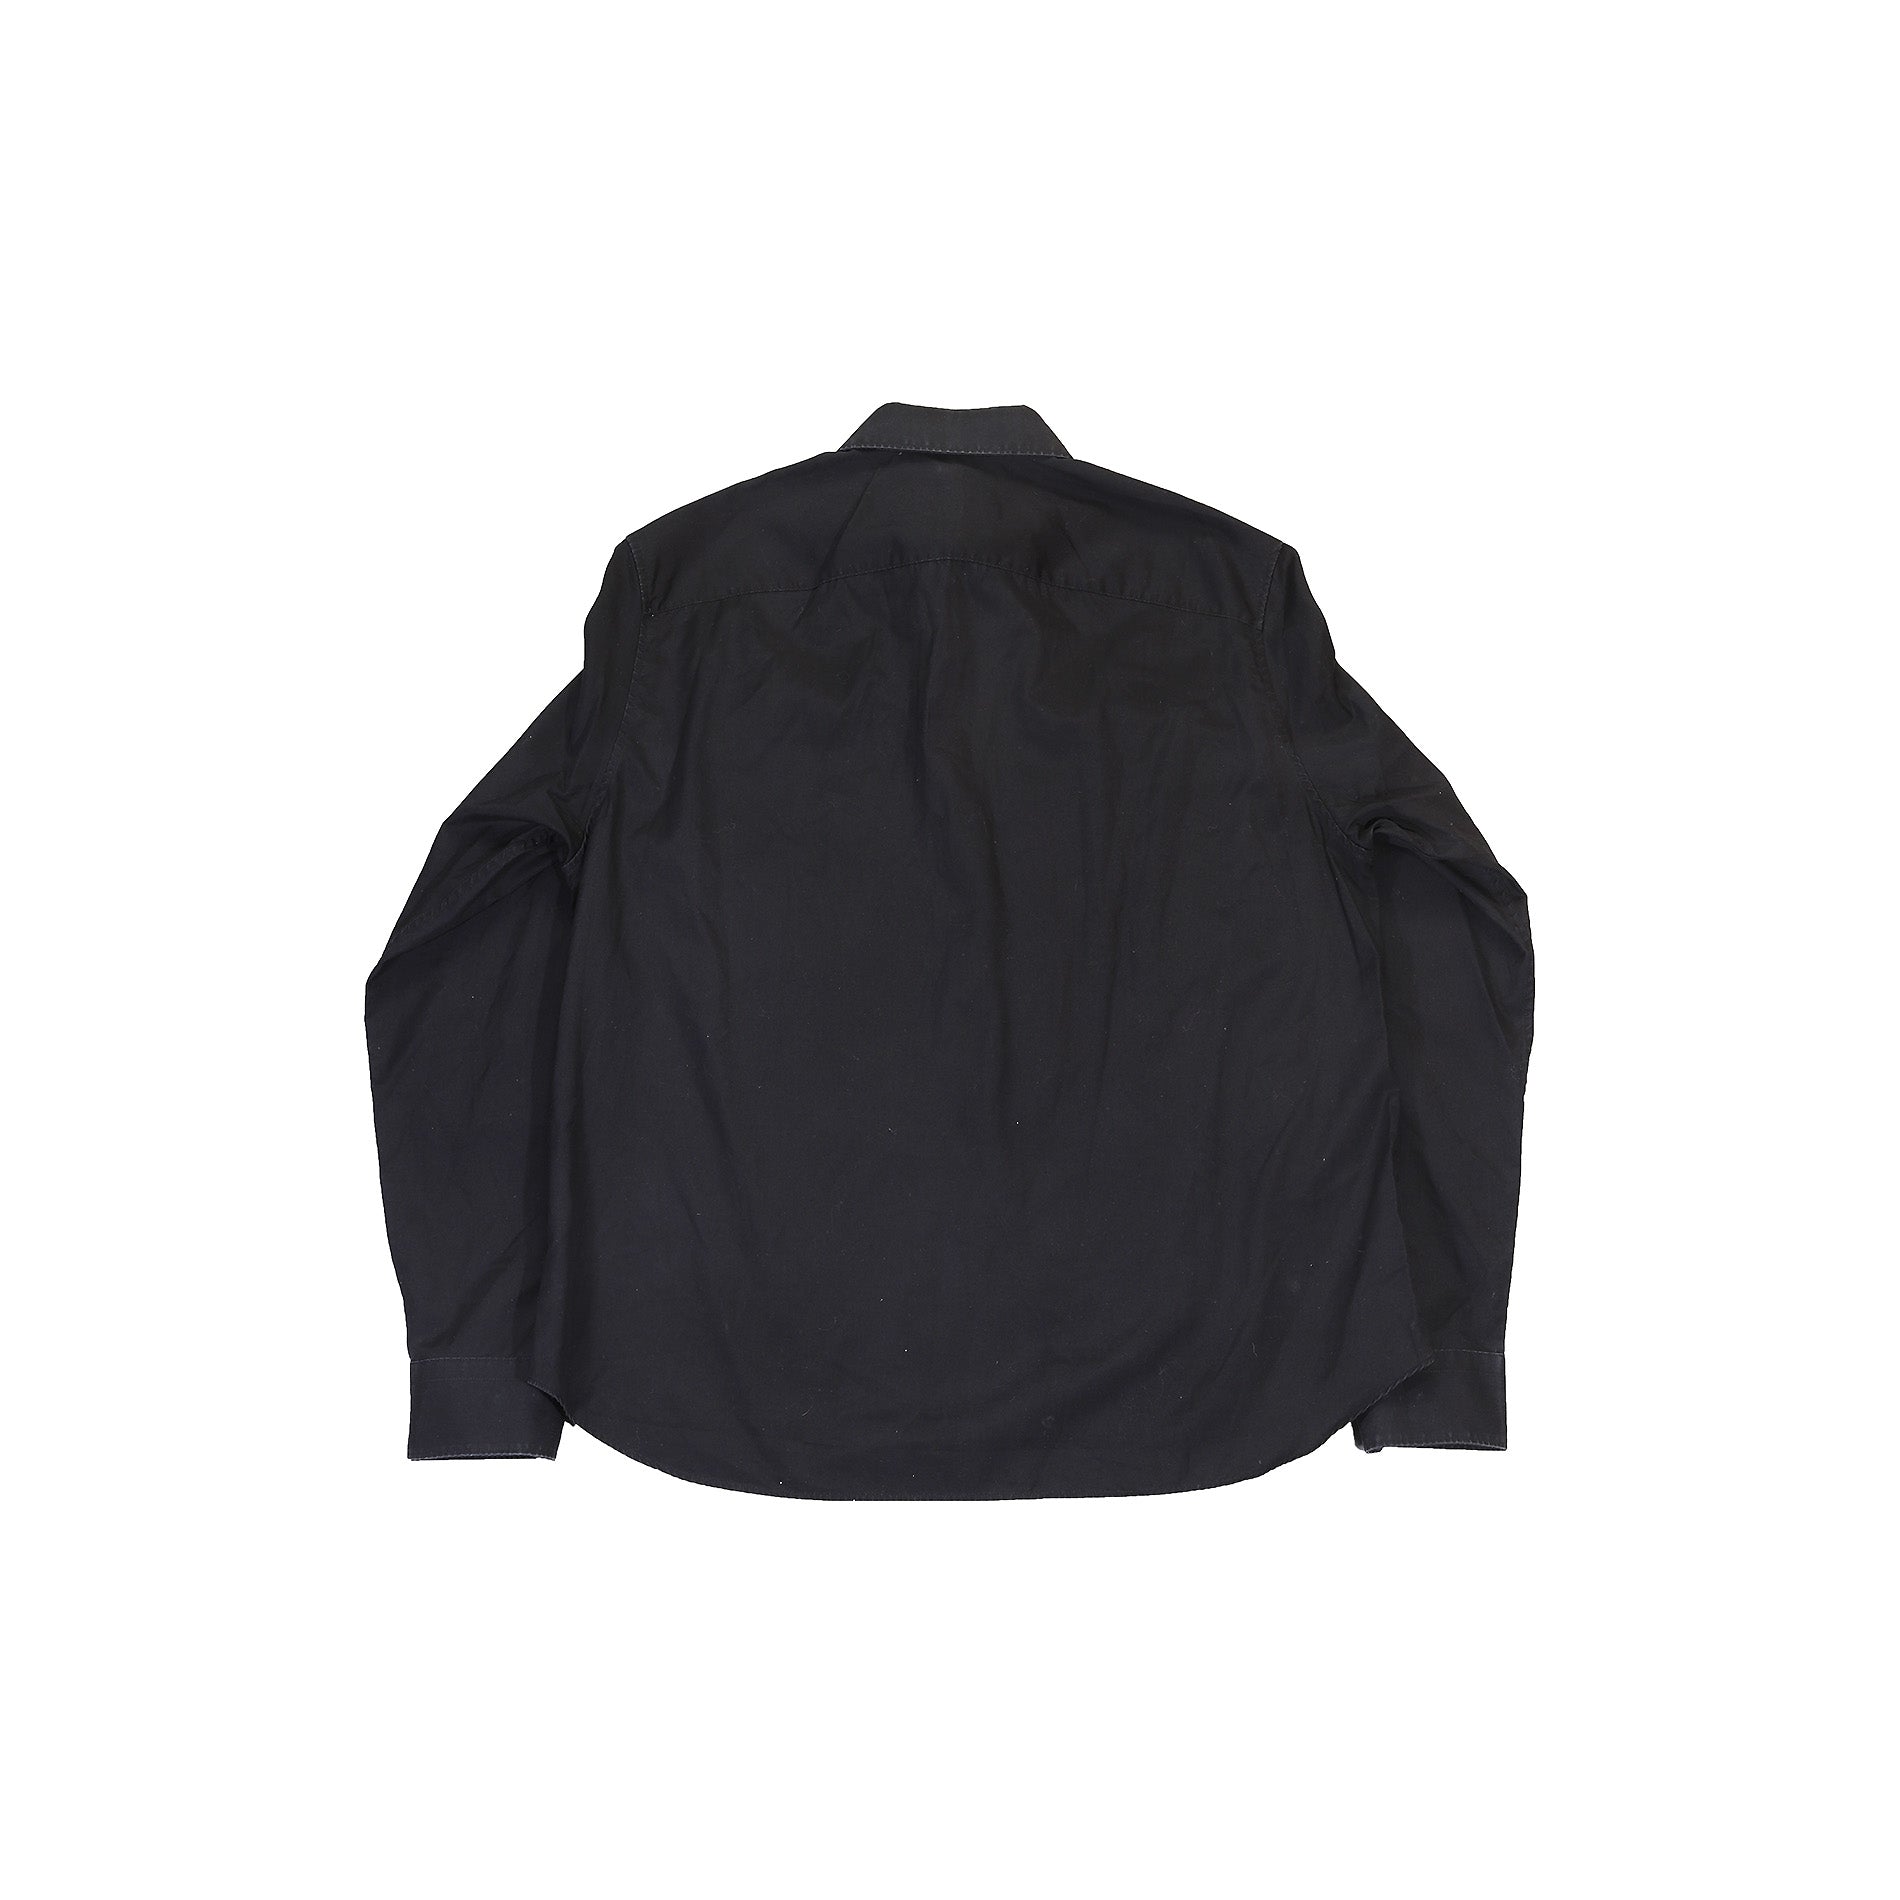 Louis Vuitton Men's Black Cotton Pilot Pocket Shirt size M